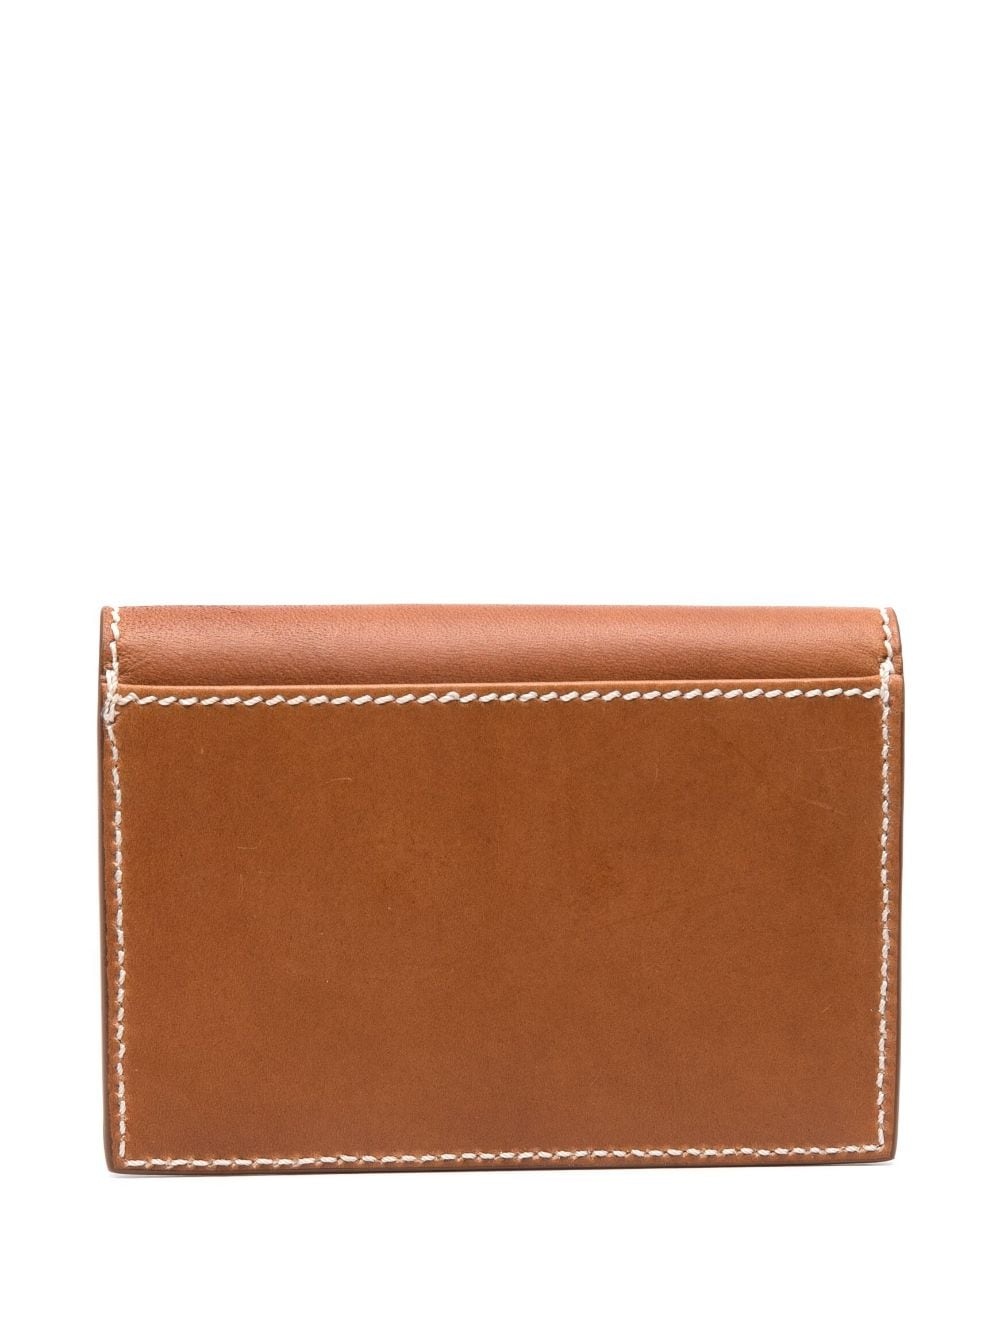 envelope leather cardholder - 2